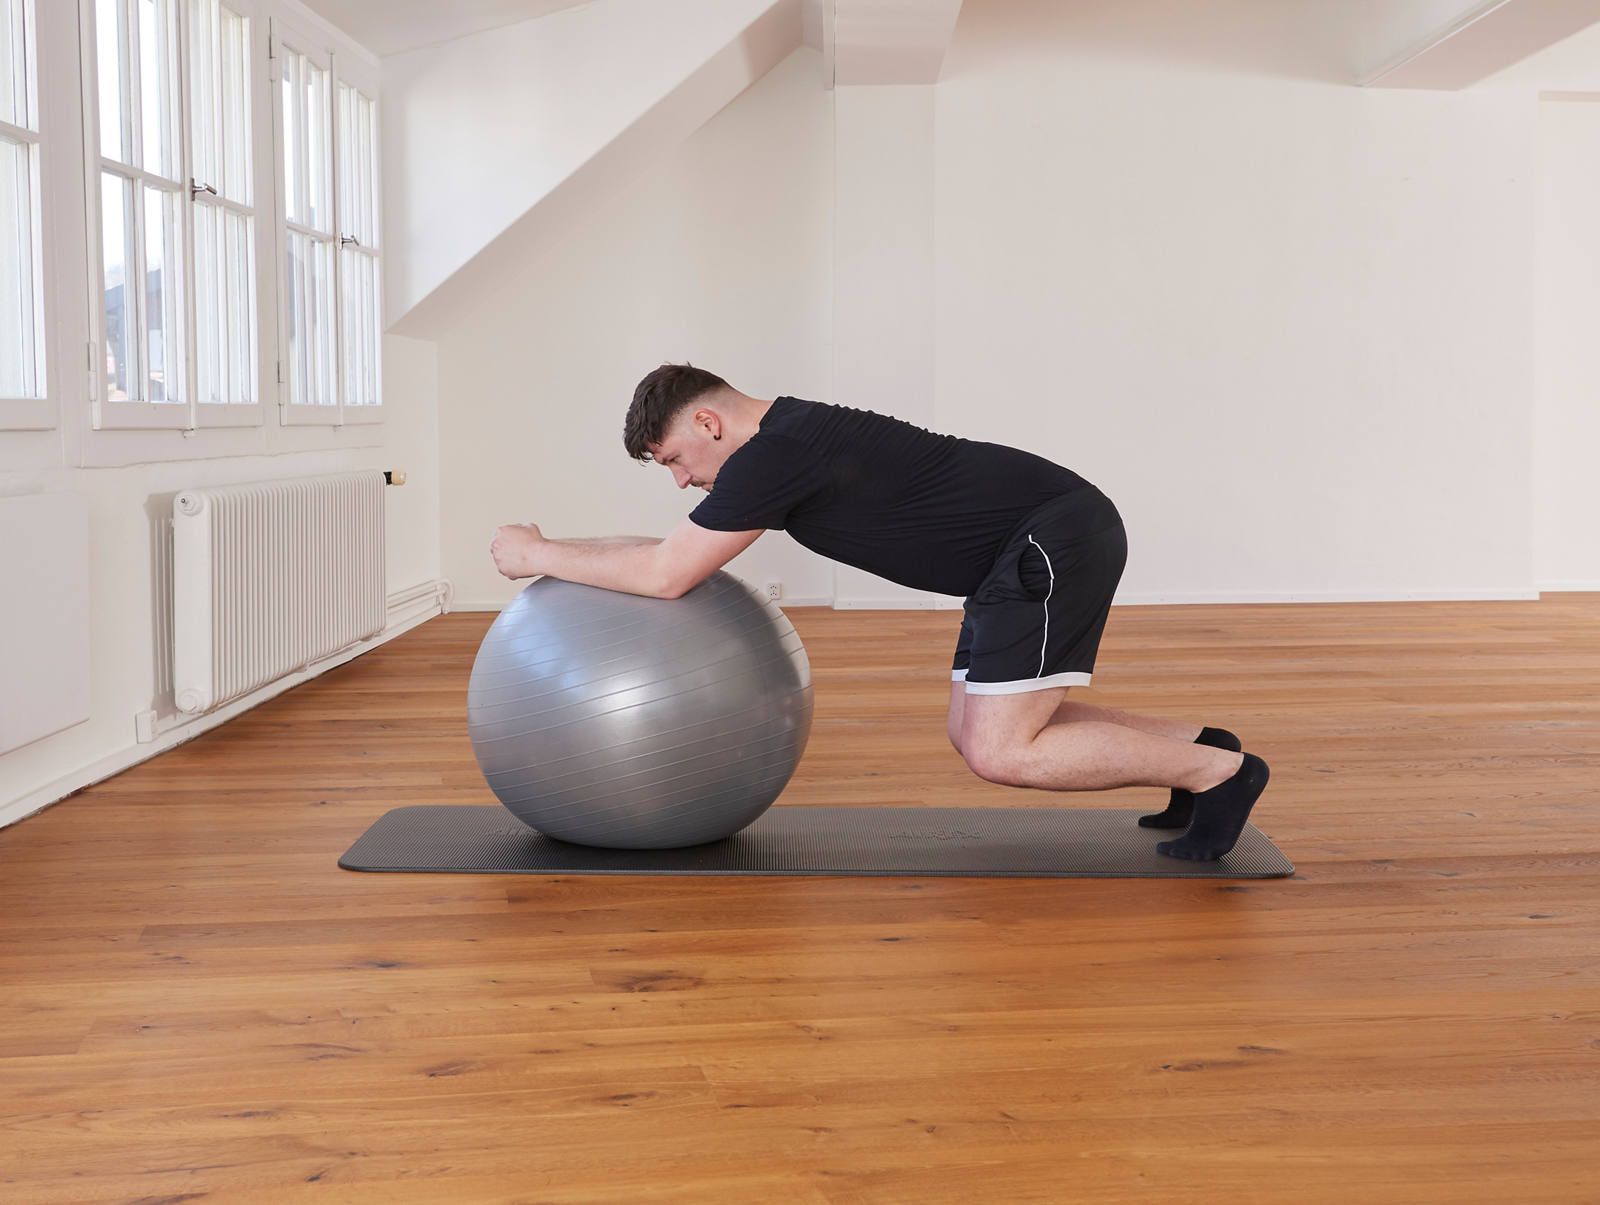 Gymnastikball – Stabilität für den Rumpf: Position 2